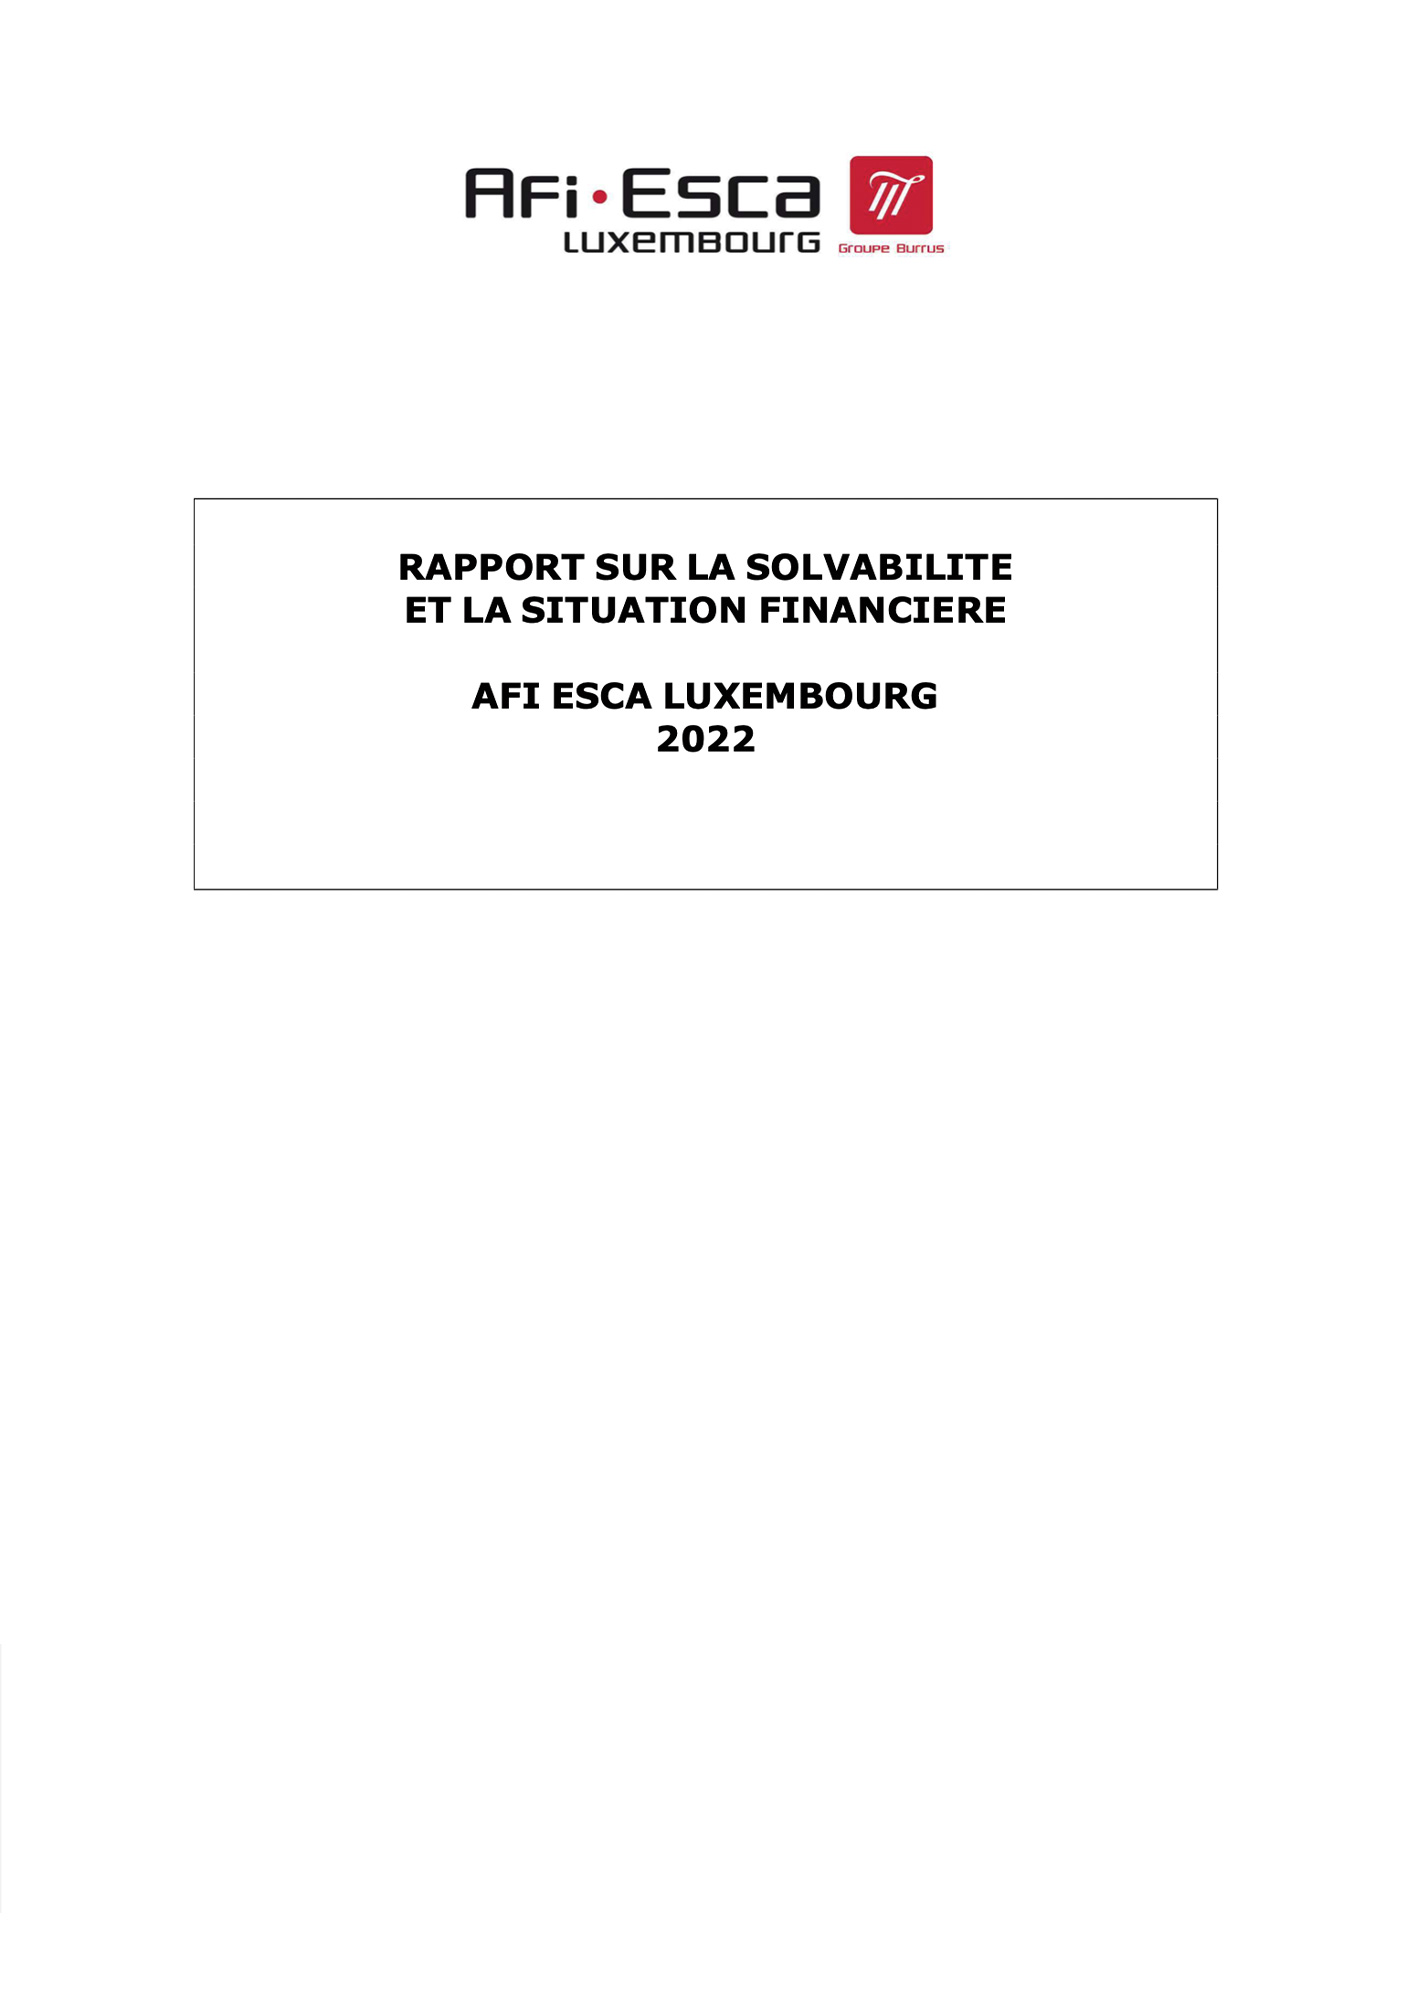 Rapport sur la solvabilité et la situation financière 2022